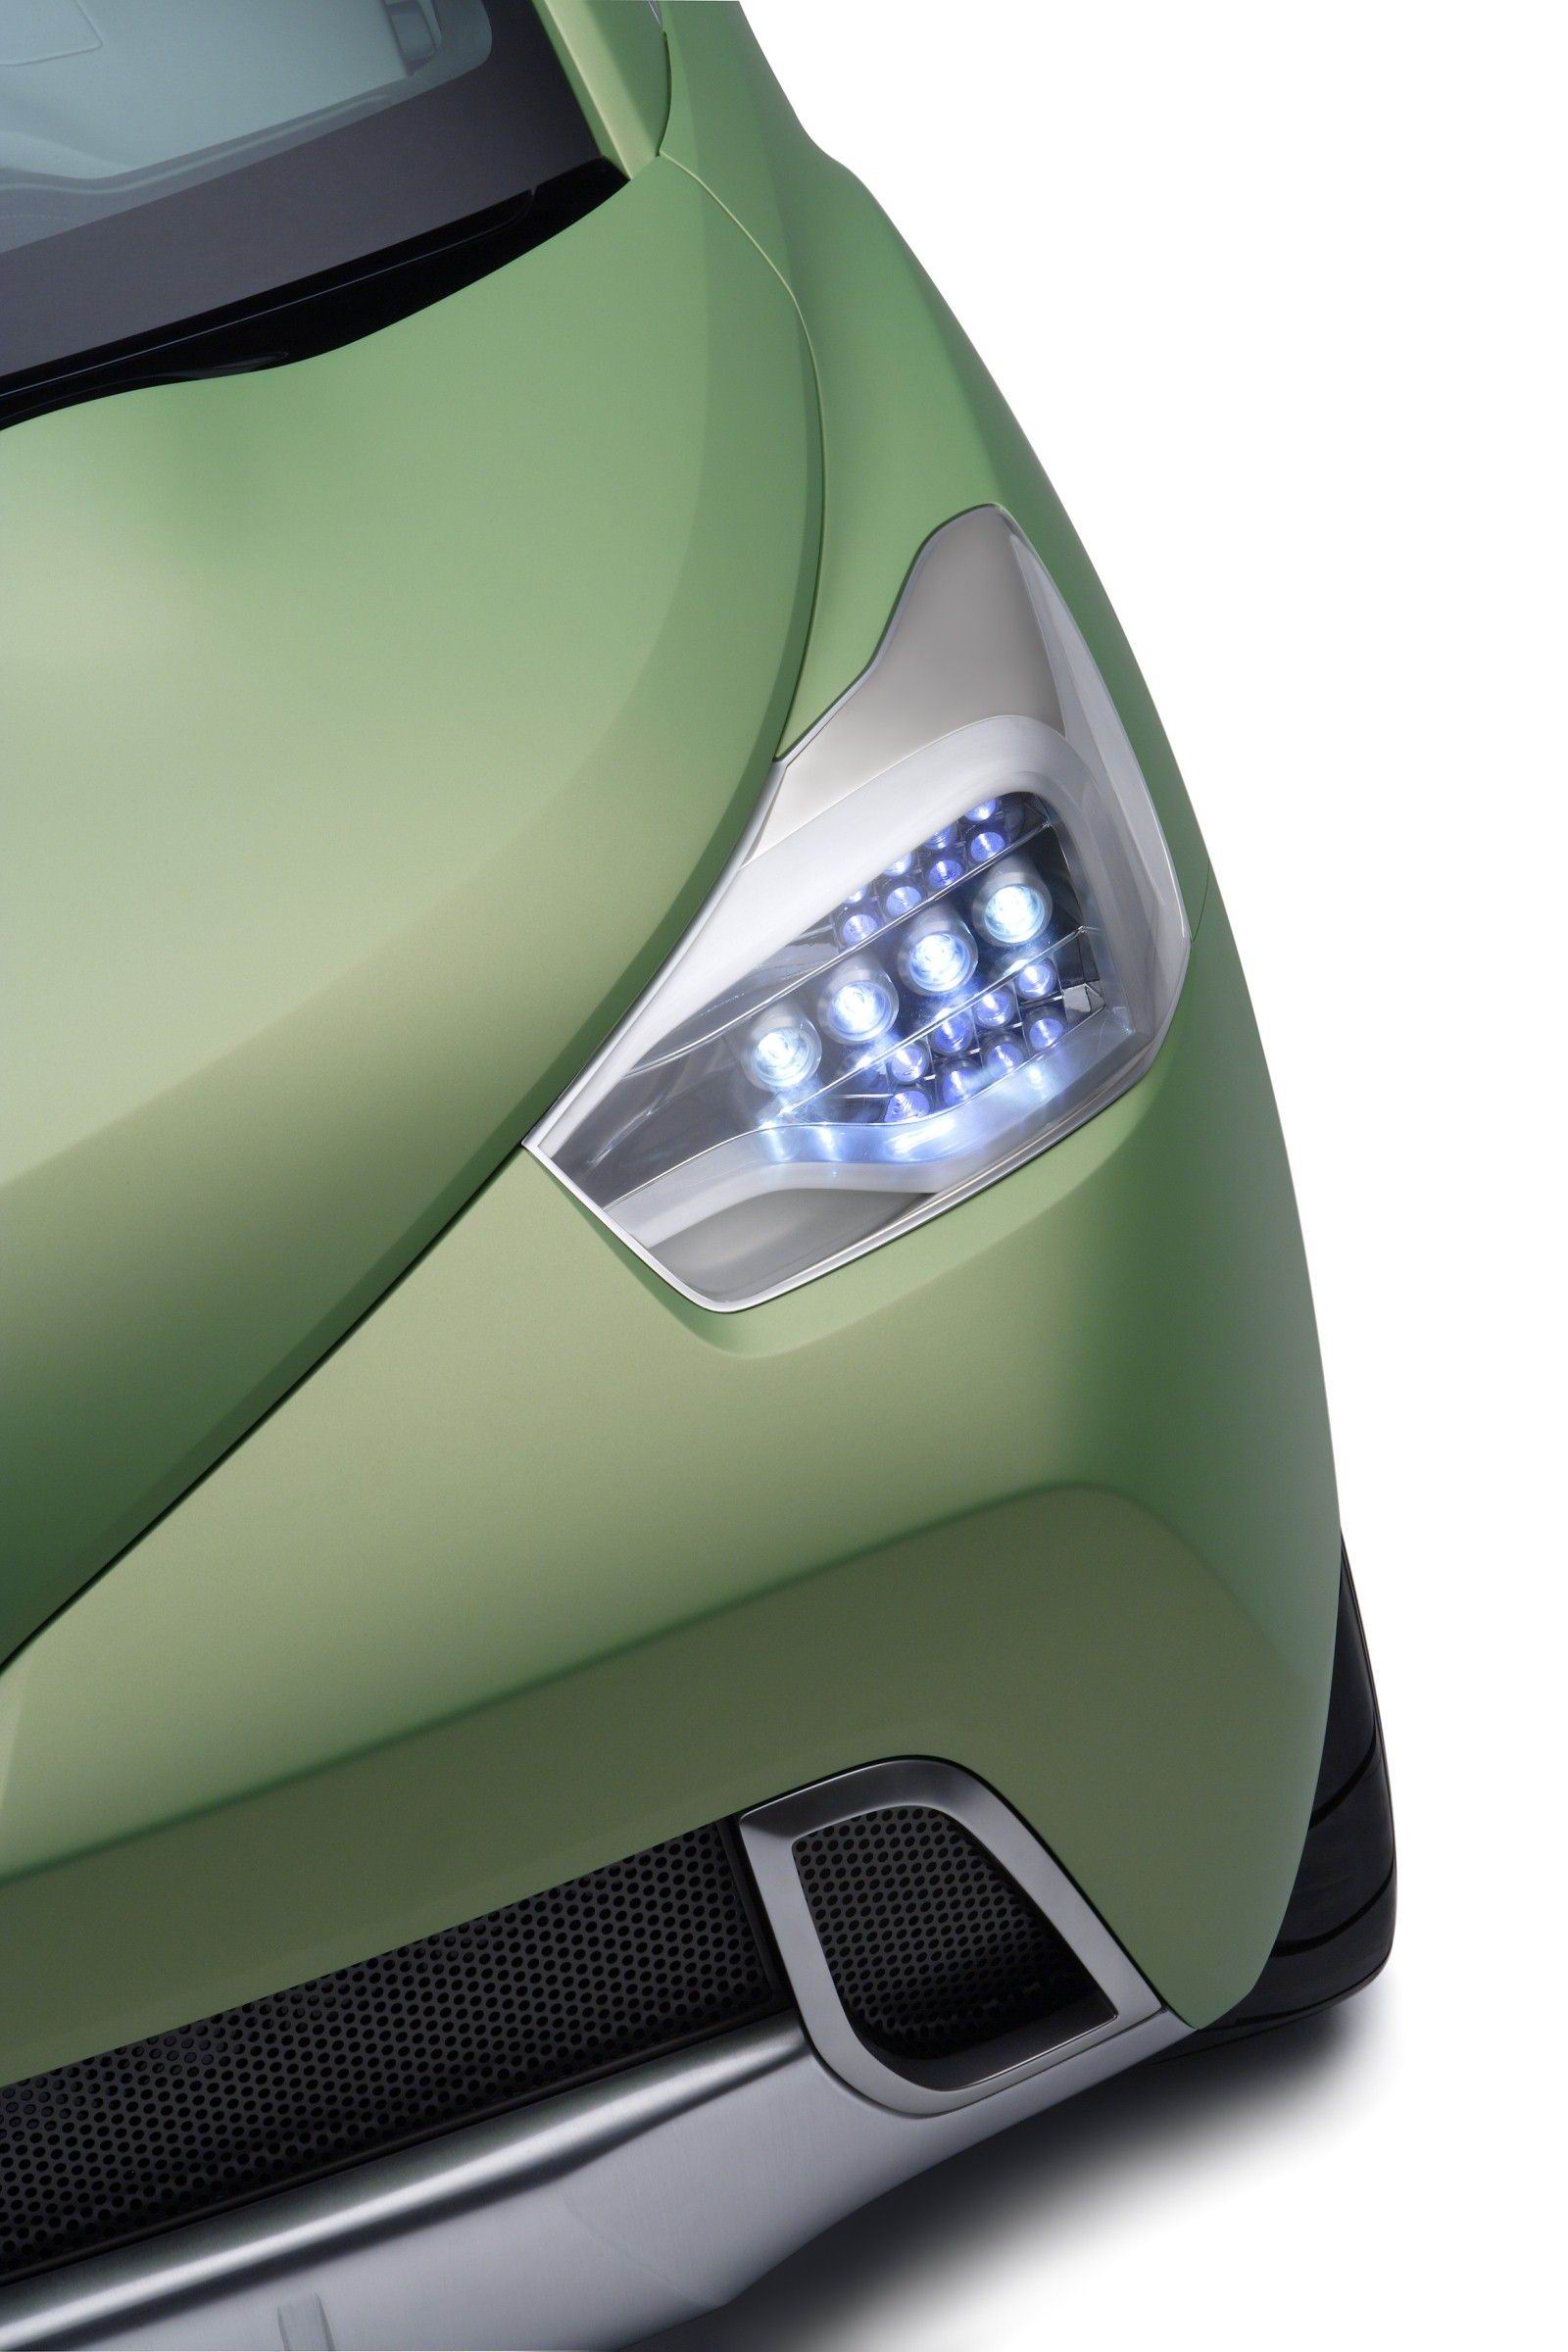 Toyota () Urban Cruiser Concept:  